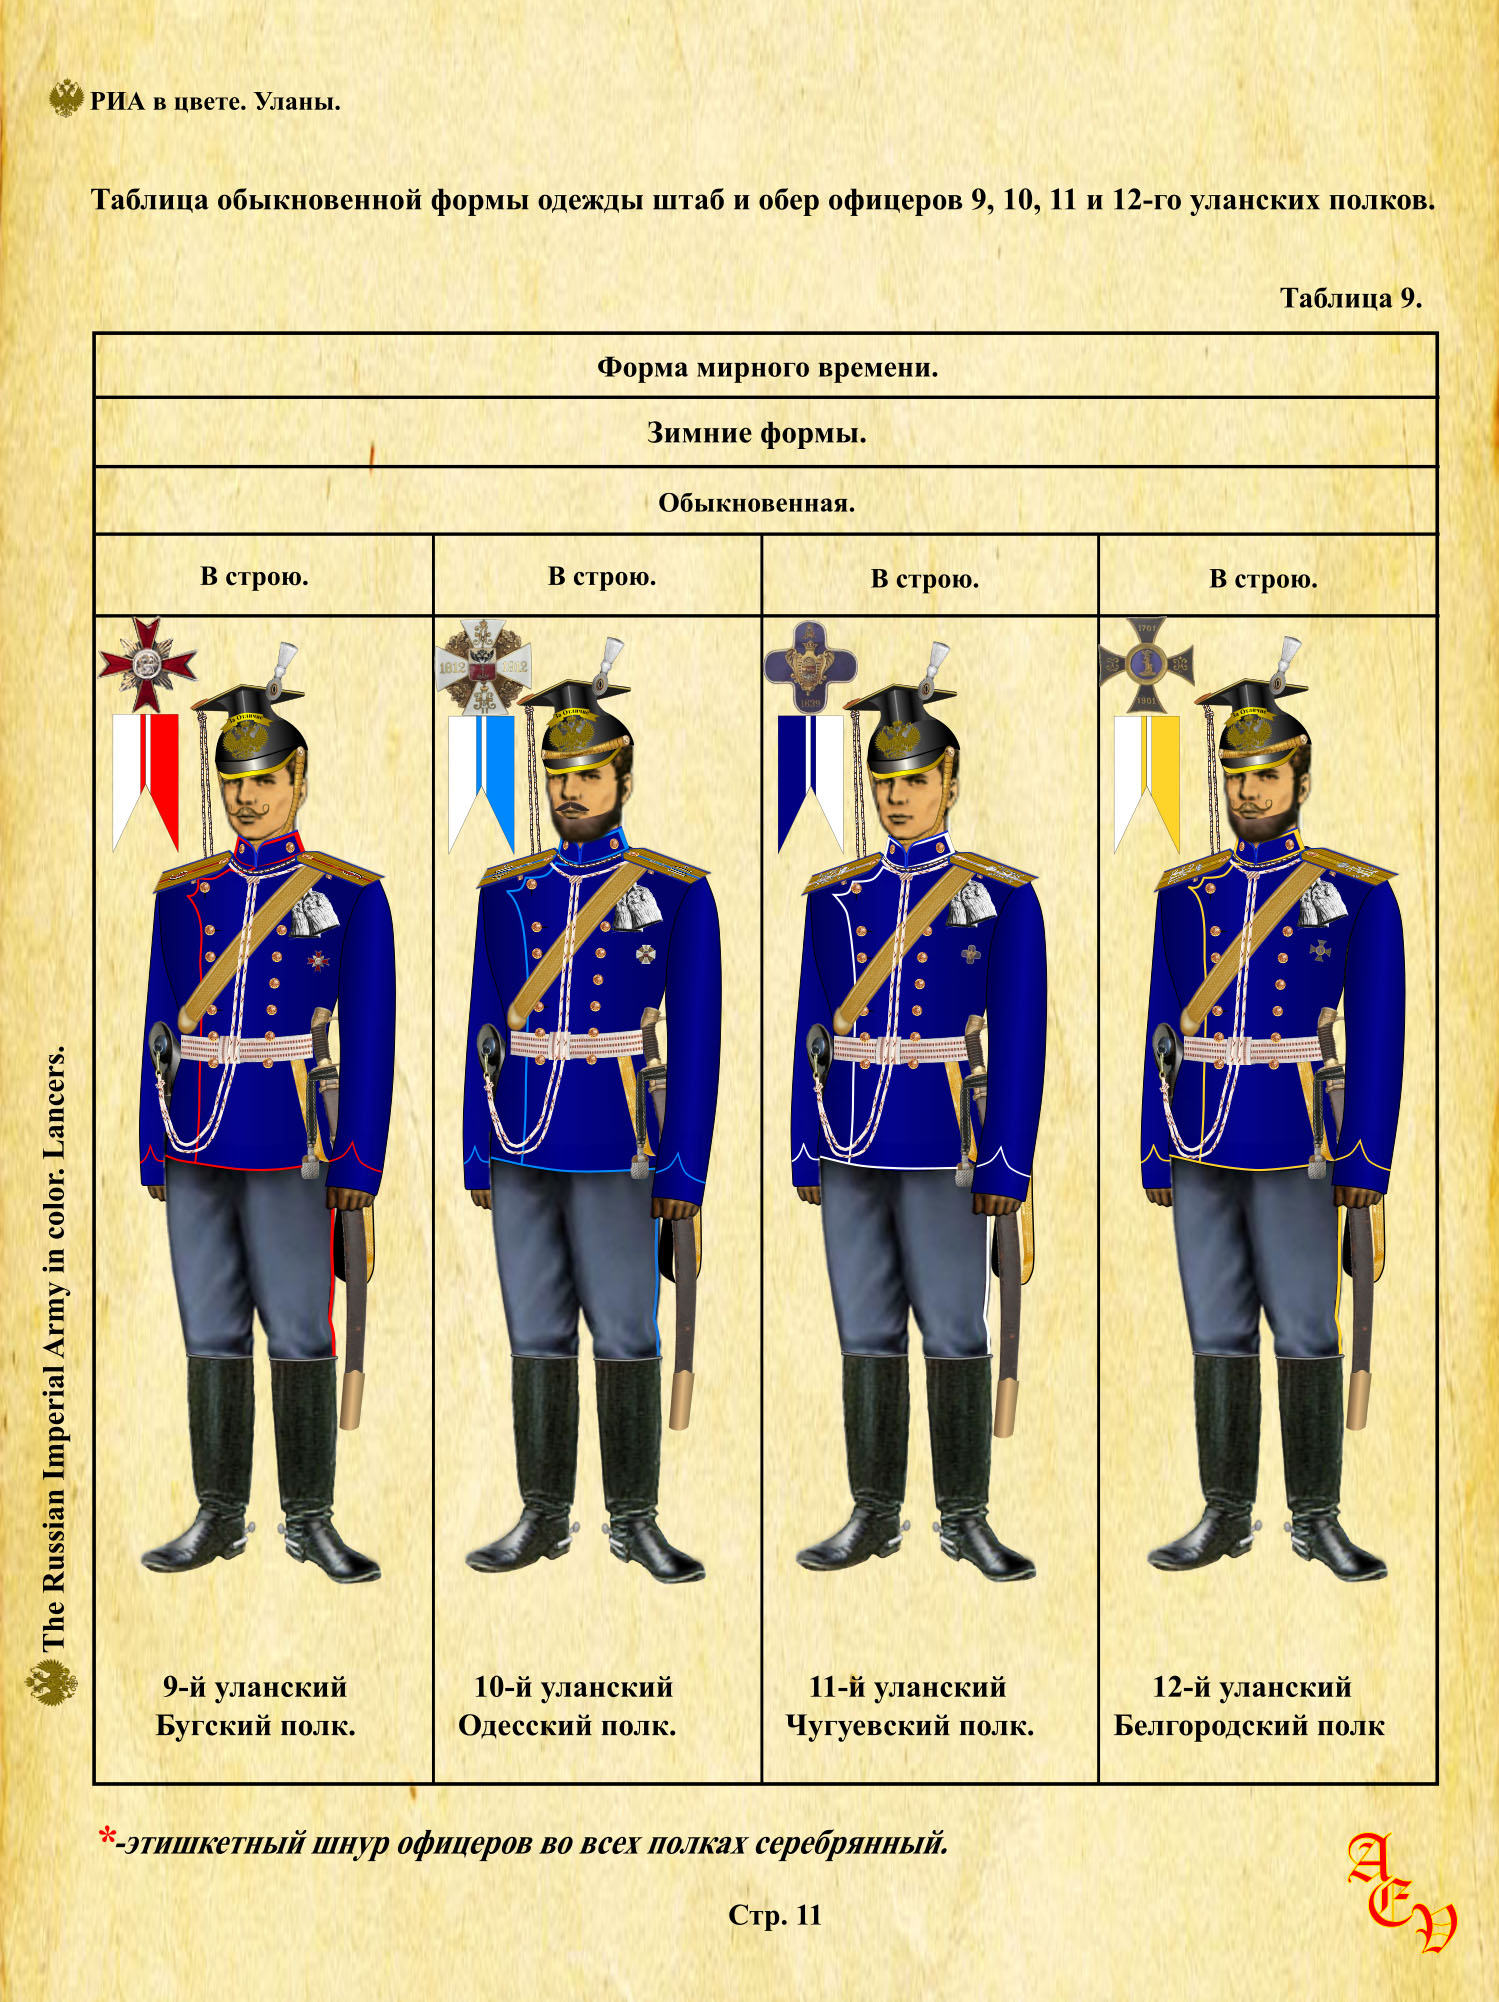 9 уланский бугский полк